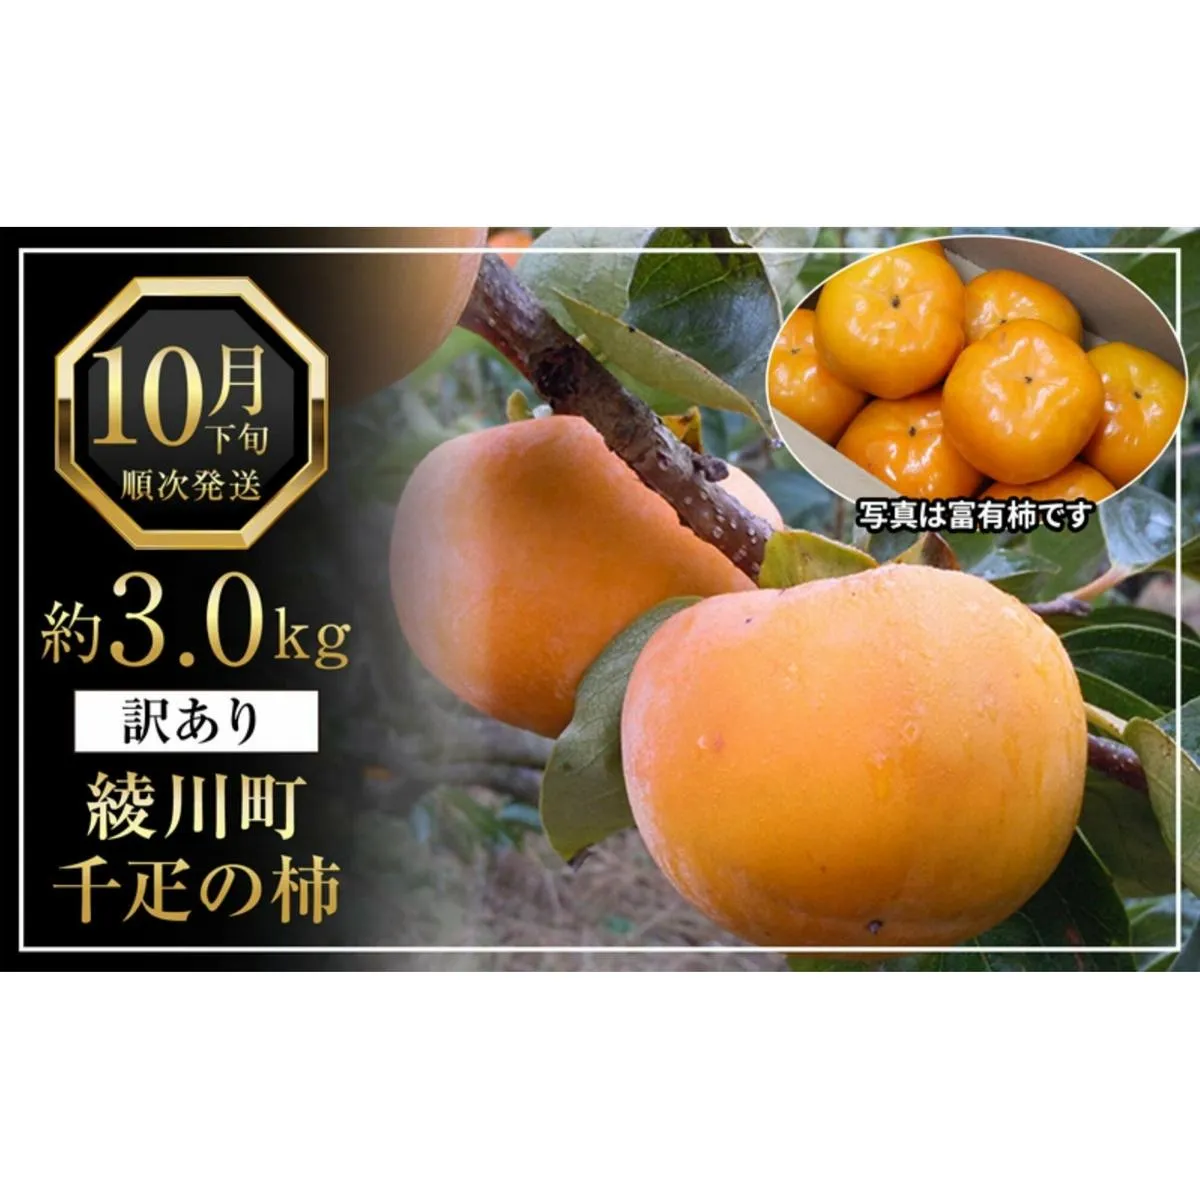 全国でも有名な「綾川町産千疋の柿」訳ありサイズ混合 約3.0kg